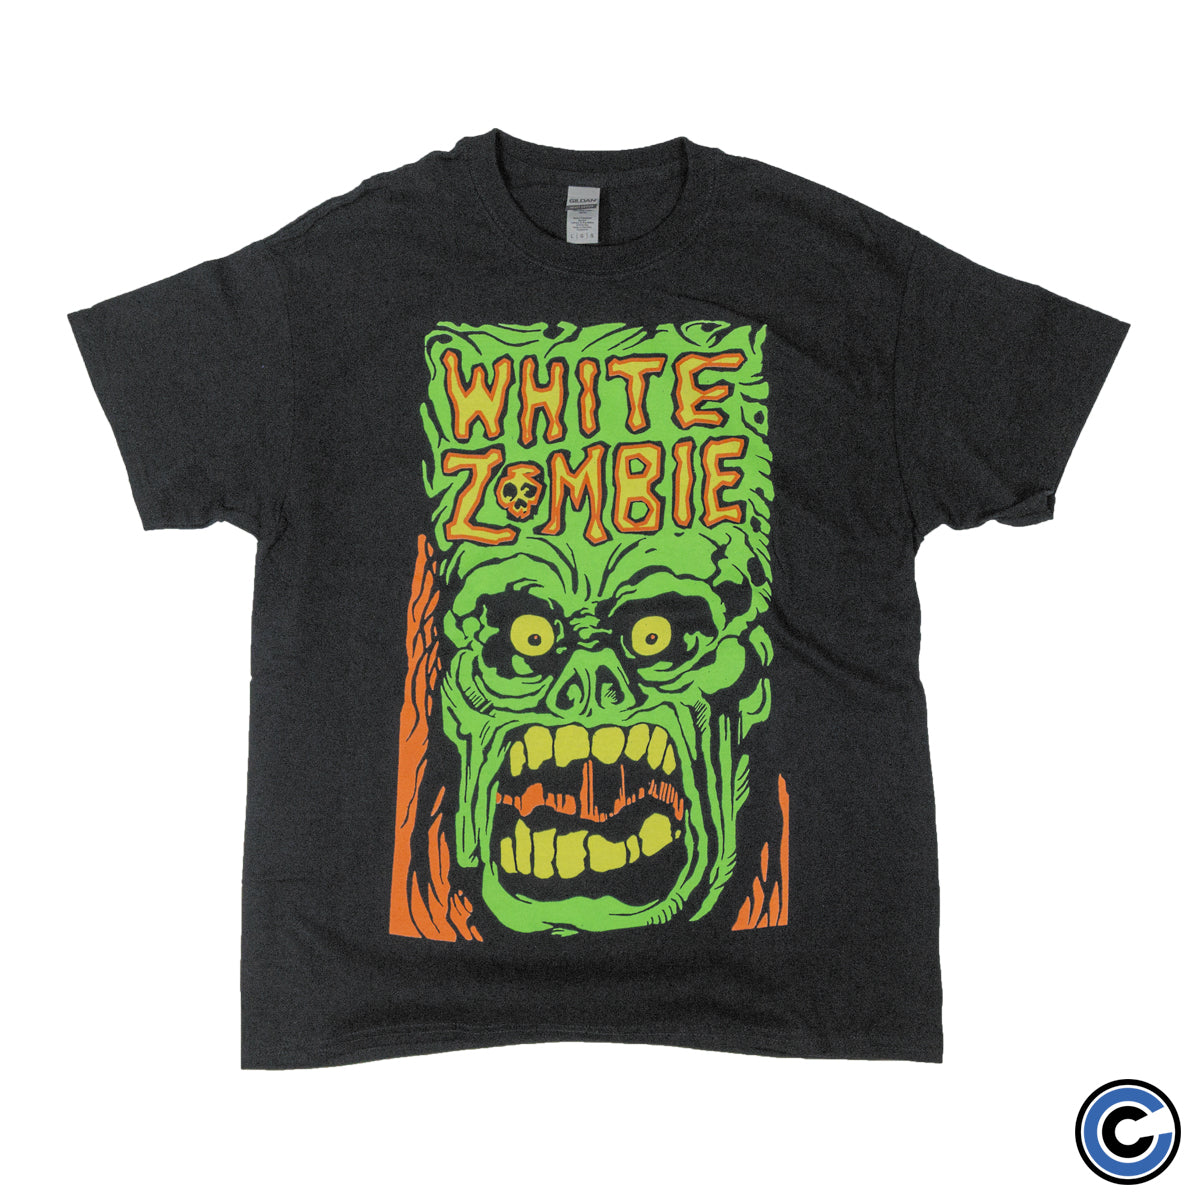 White Zombie "Monster Yell" Shirt